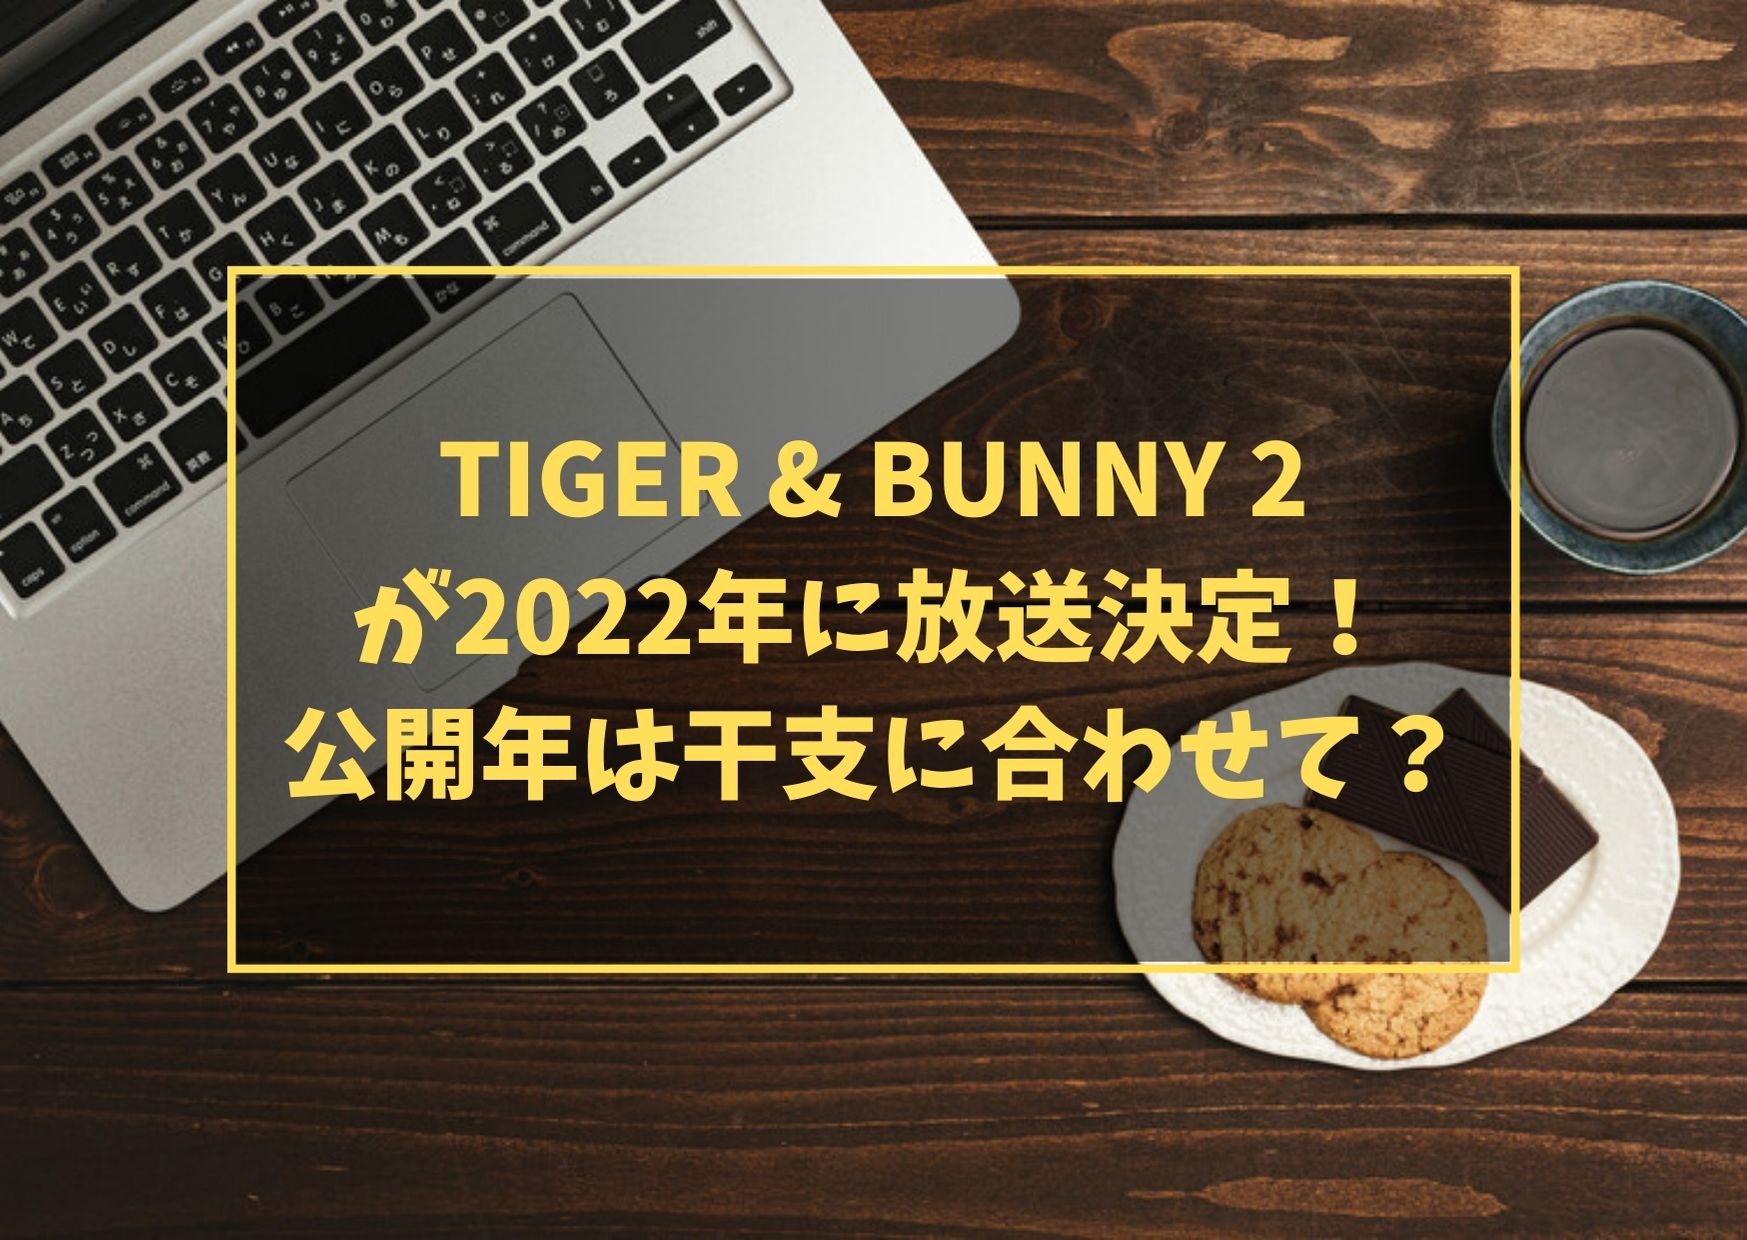 TIGER & BUNNY 2が2022年に放送決定！公開年は干支に合わせて？